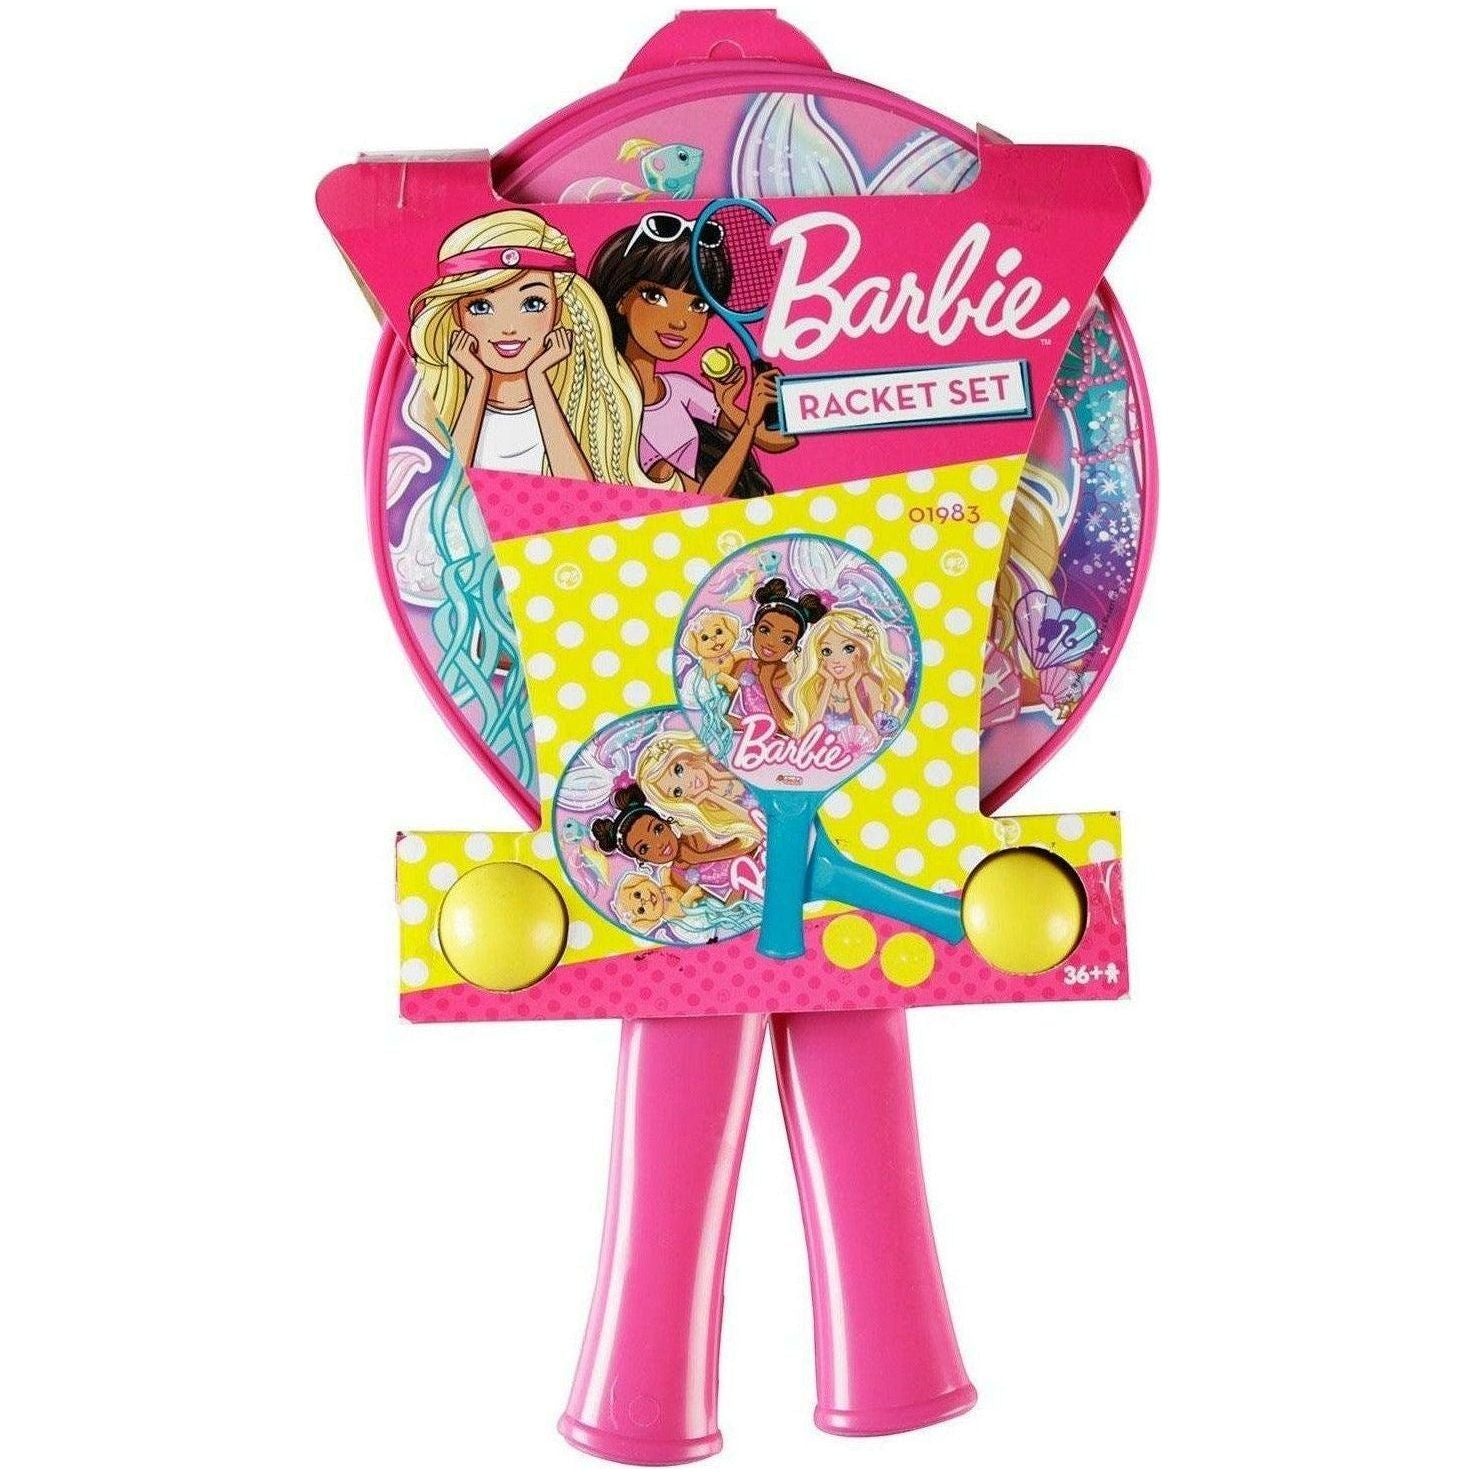 Dede 1983 Barbie Racket Set For Girls - BumbleToys - 4+ Years, 5-7 Years, 6+ Years, Balls, Barbie, Cecil, Girls, Kids Sports & Balls, rocket, Roleplay